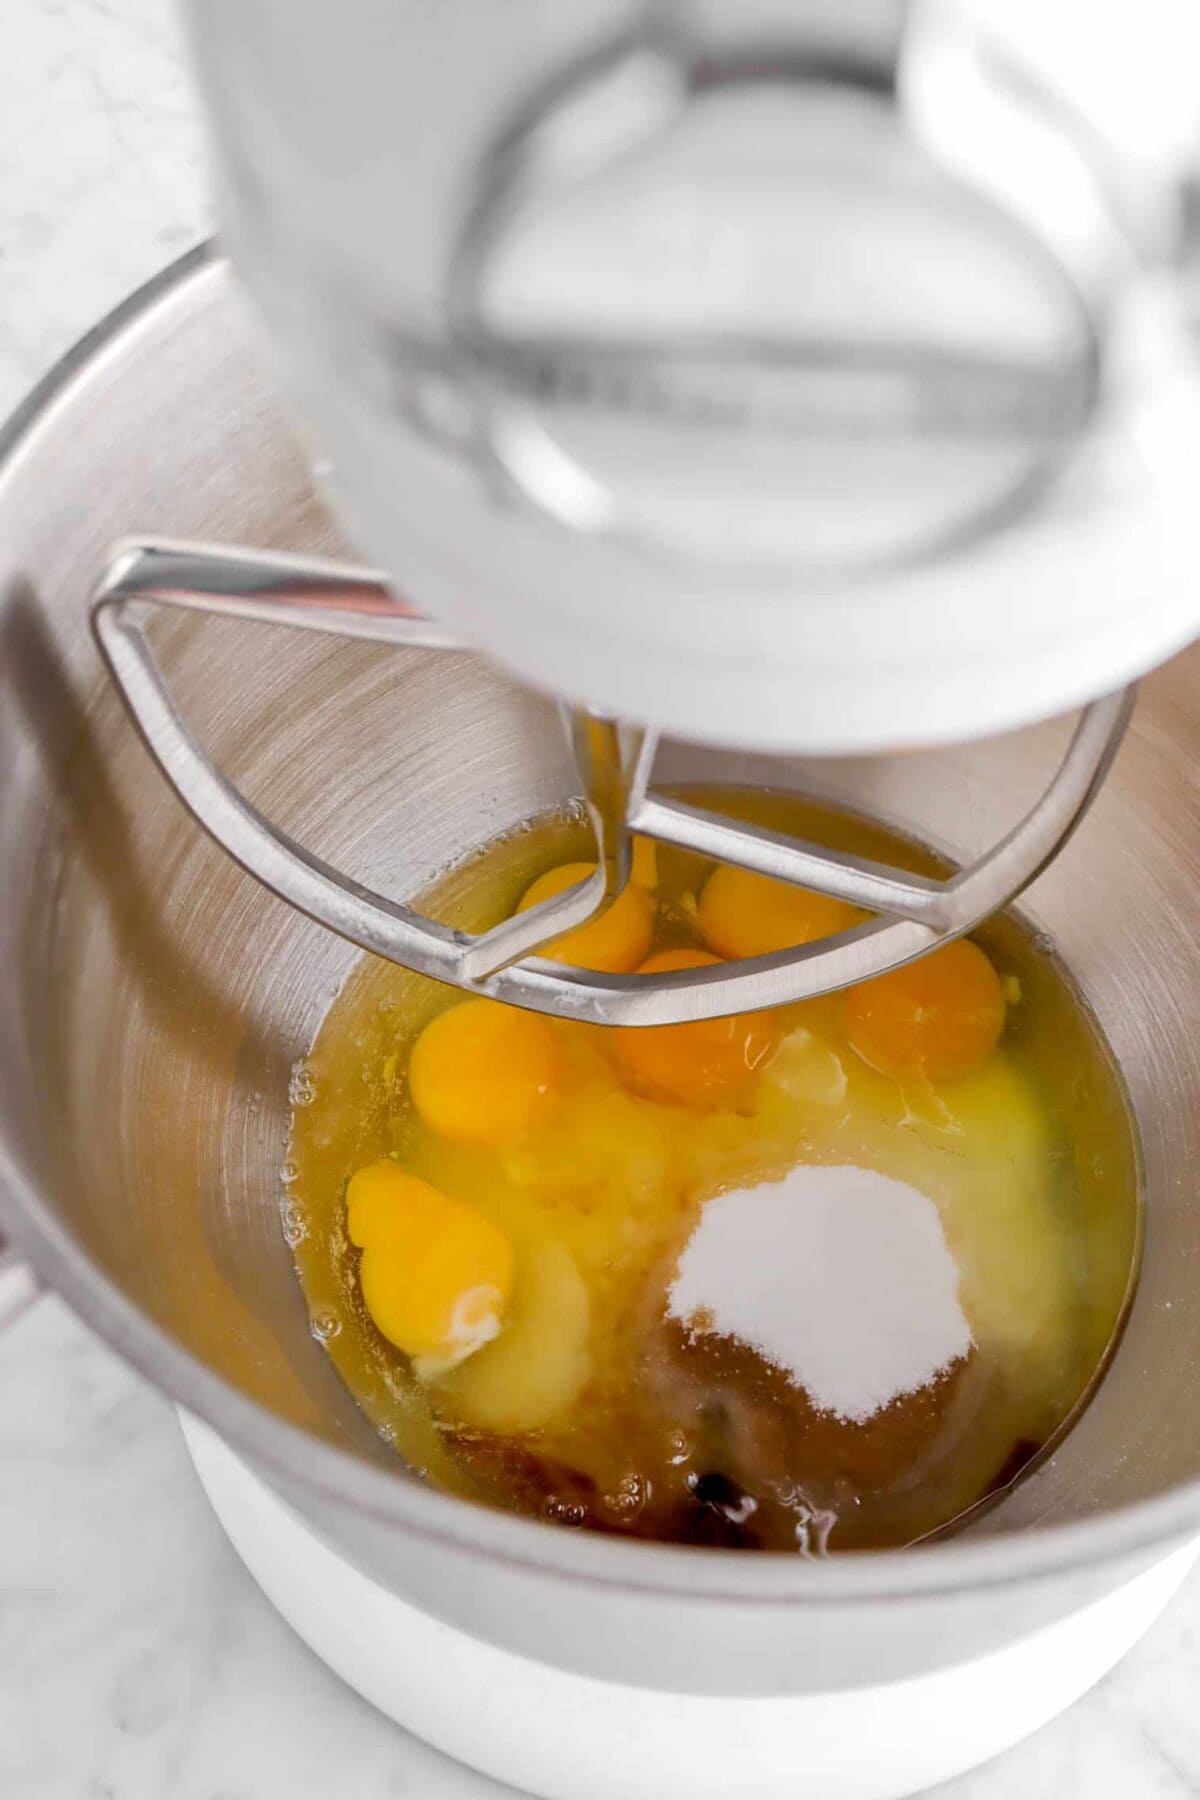 eggs, sugar, and vanilla in mixer